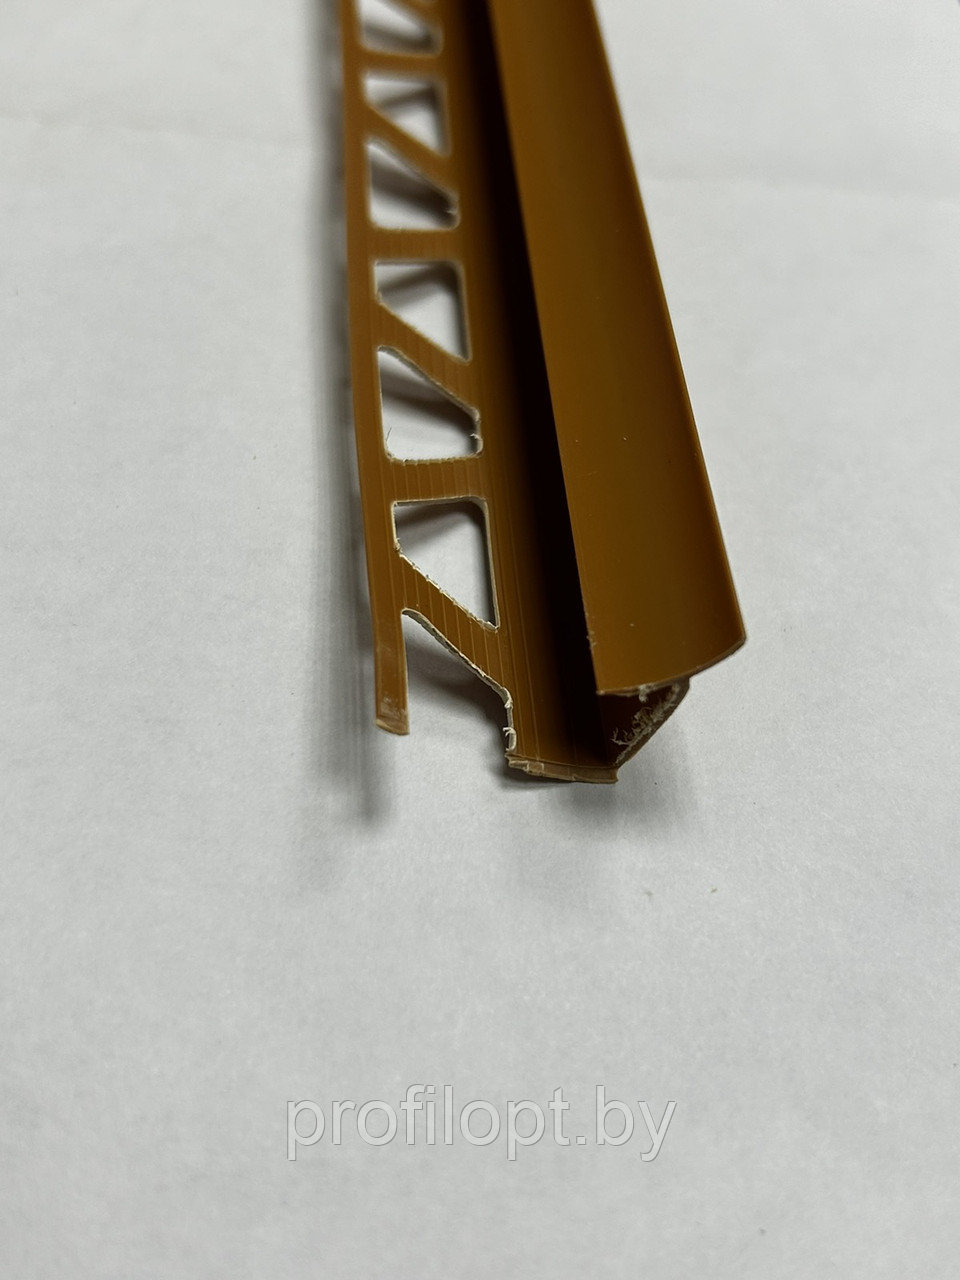 Уголок (раскладка) для плитки внутренний ПВХ 8 мм., 2,5м. Карамель